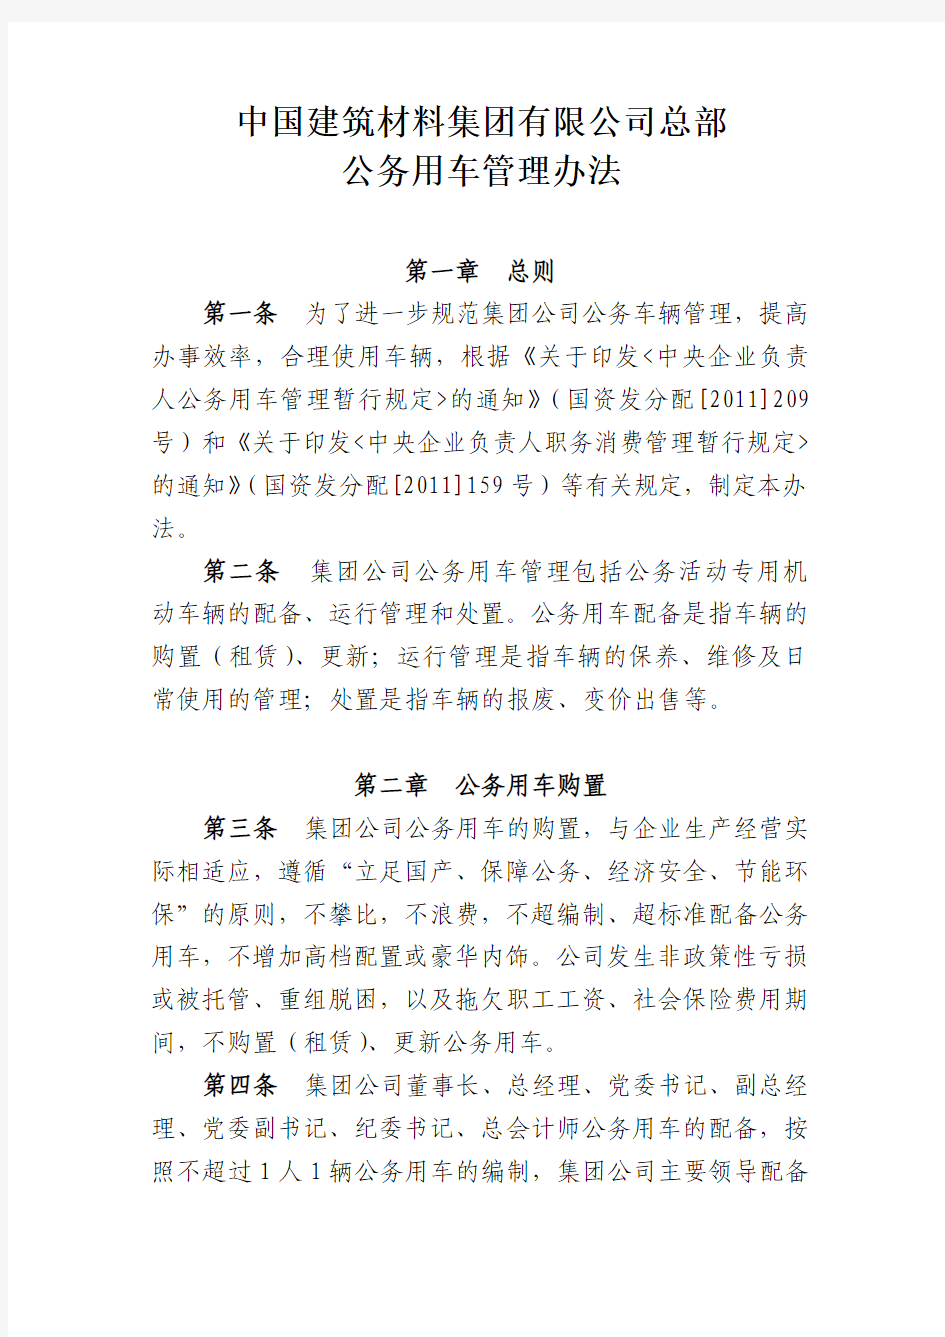 中国建筑材料集团有限公司总部公务用车管理办法